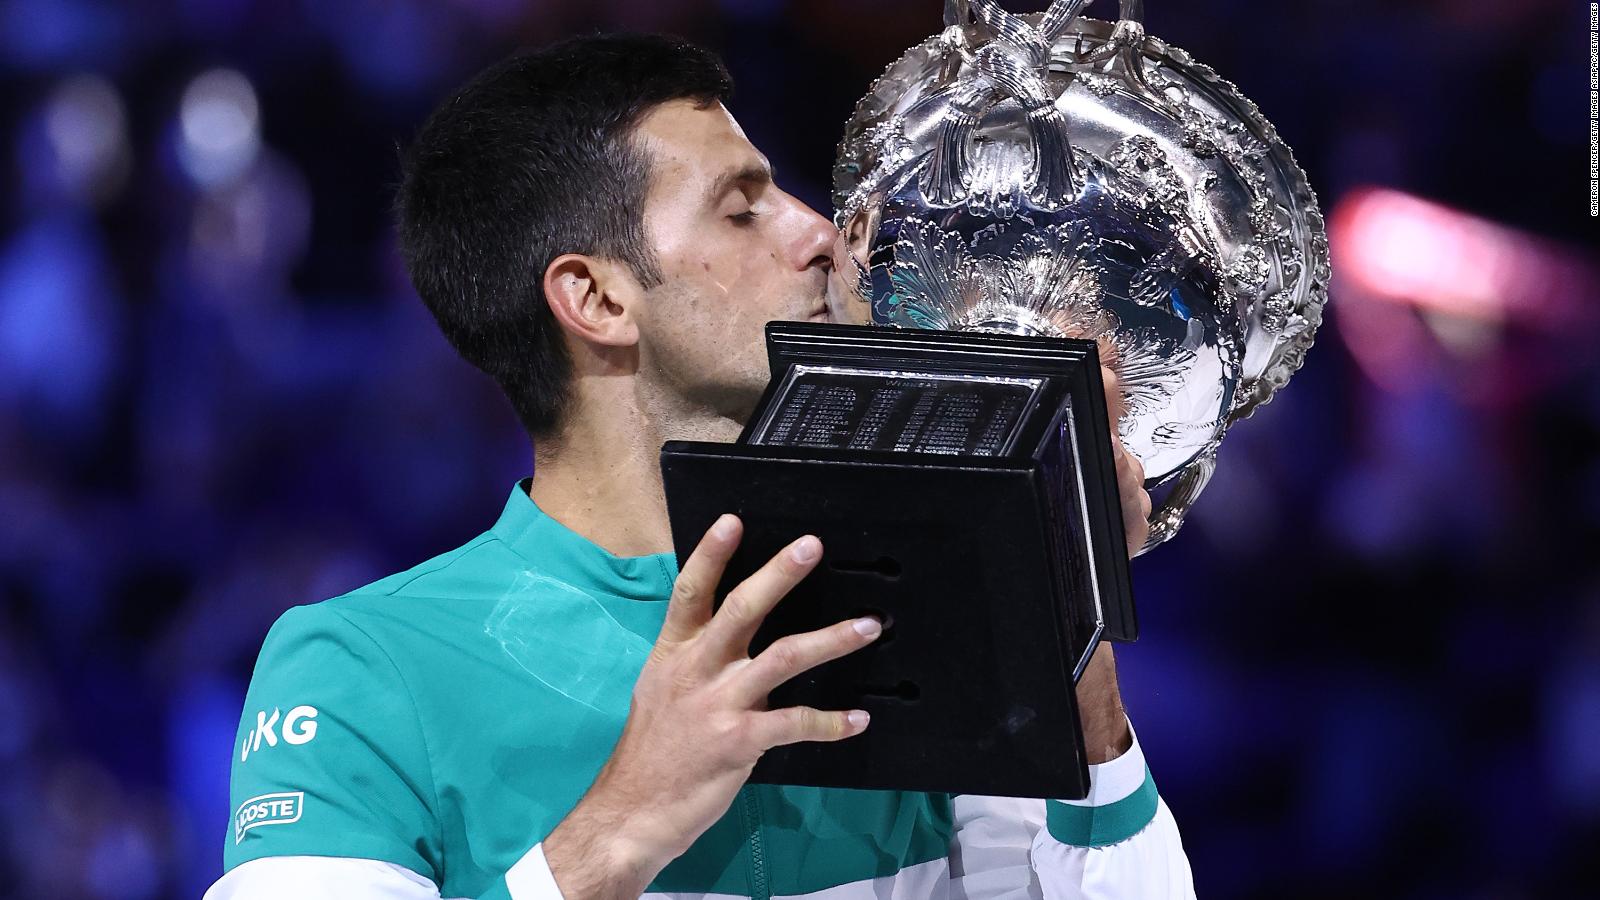 Vụ 'giam giữ' ngôi sao quần vợt Djokovic trở thành vấn đề chính trị ở Australia